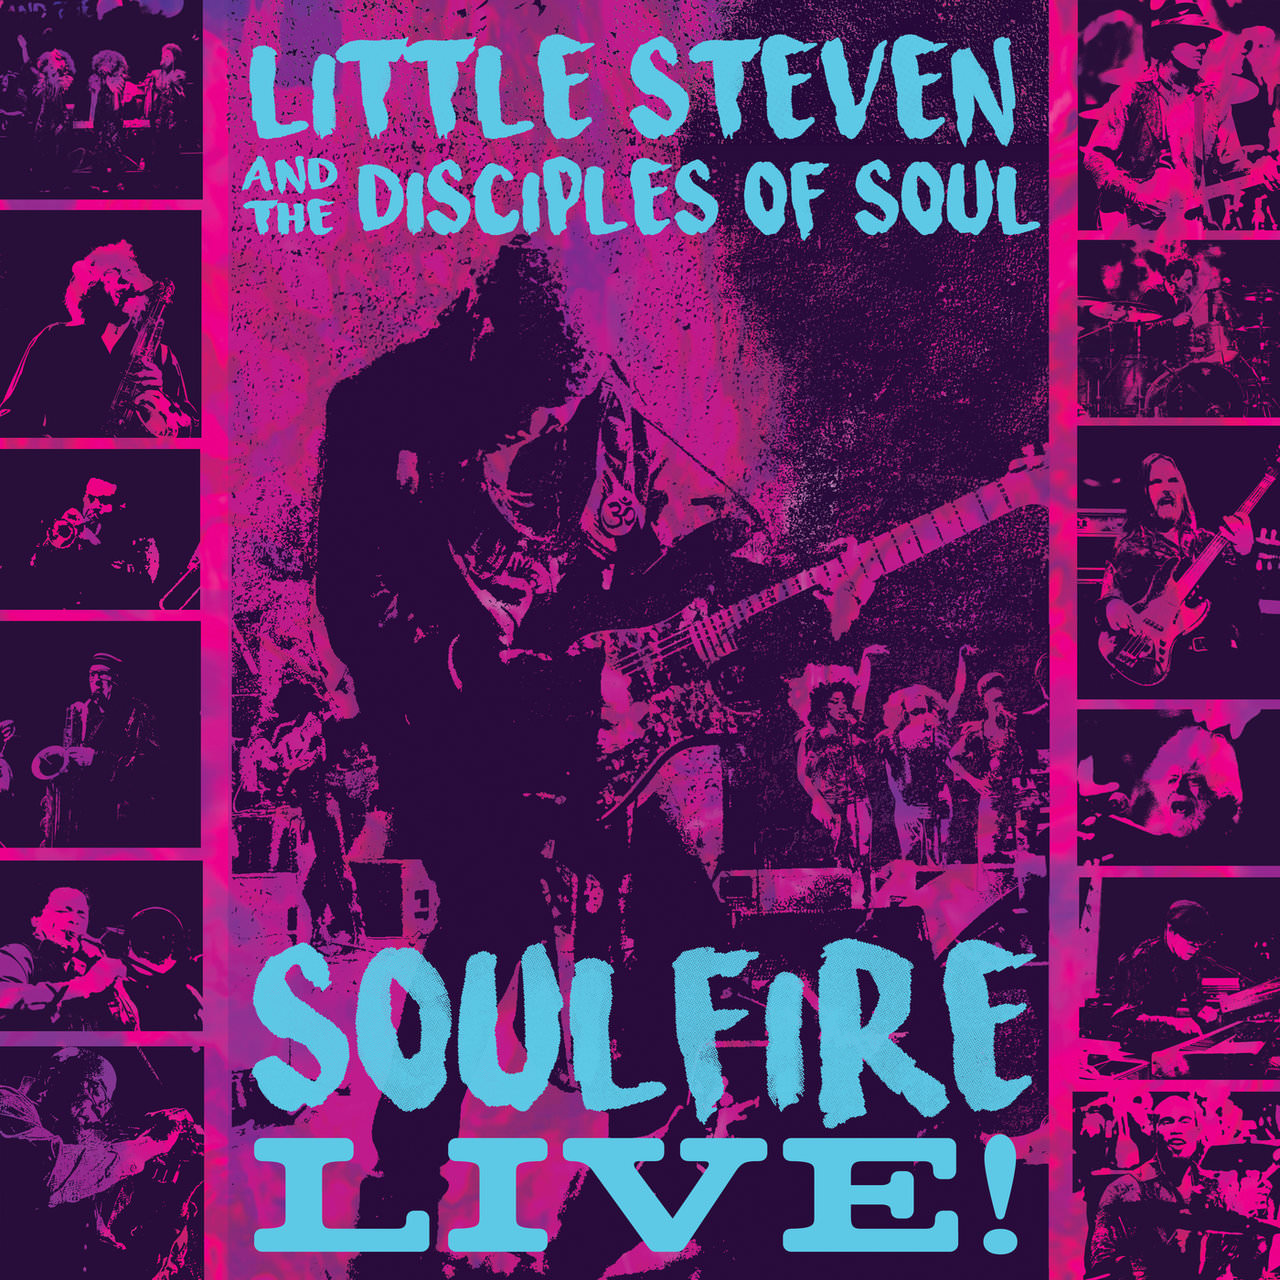 Little Steven & The Disciples of Soul – Soulfire Live! (2018) [FLAC 24bit/96kHz]